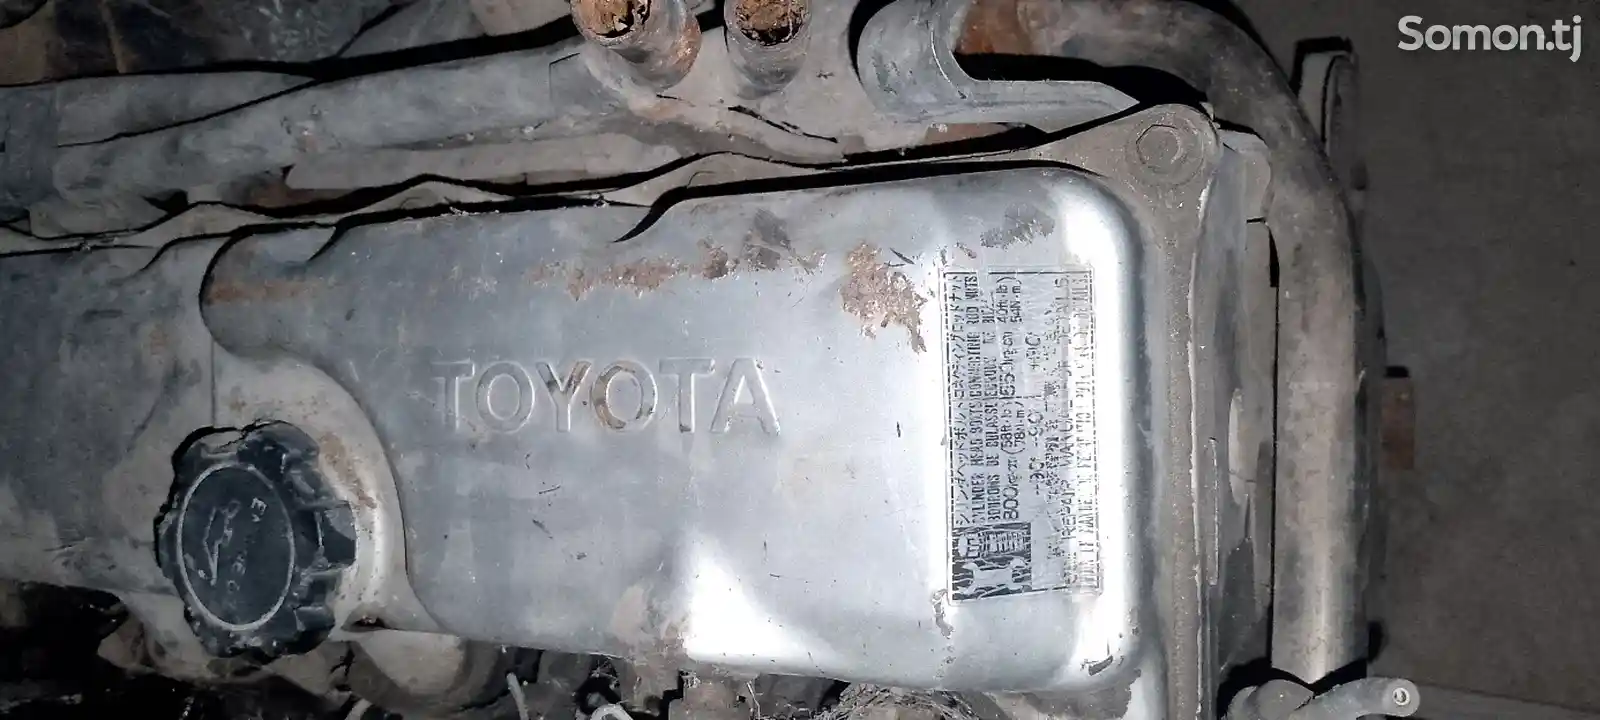 Мотор от Toyota-1